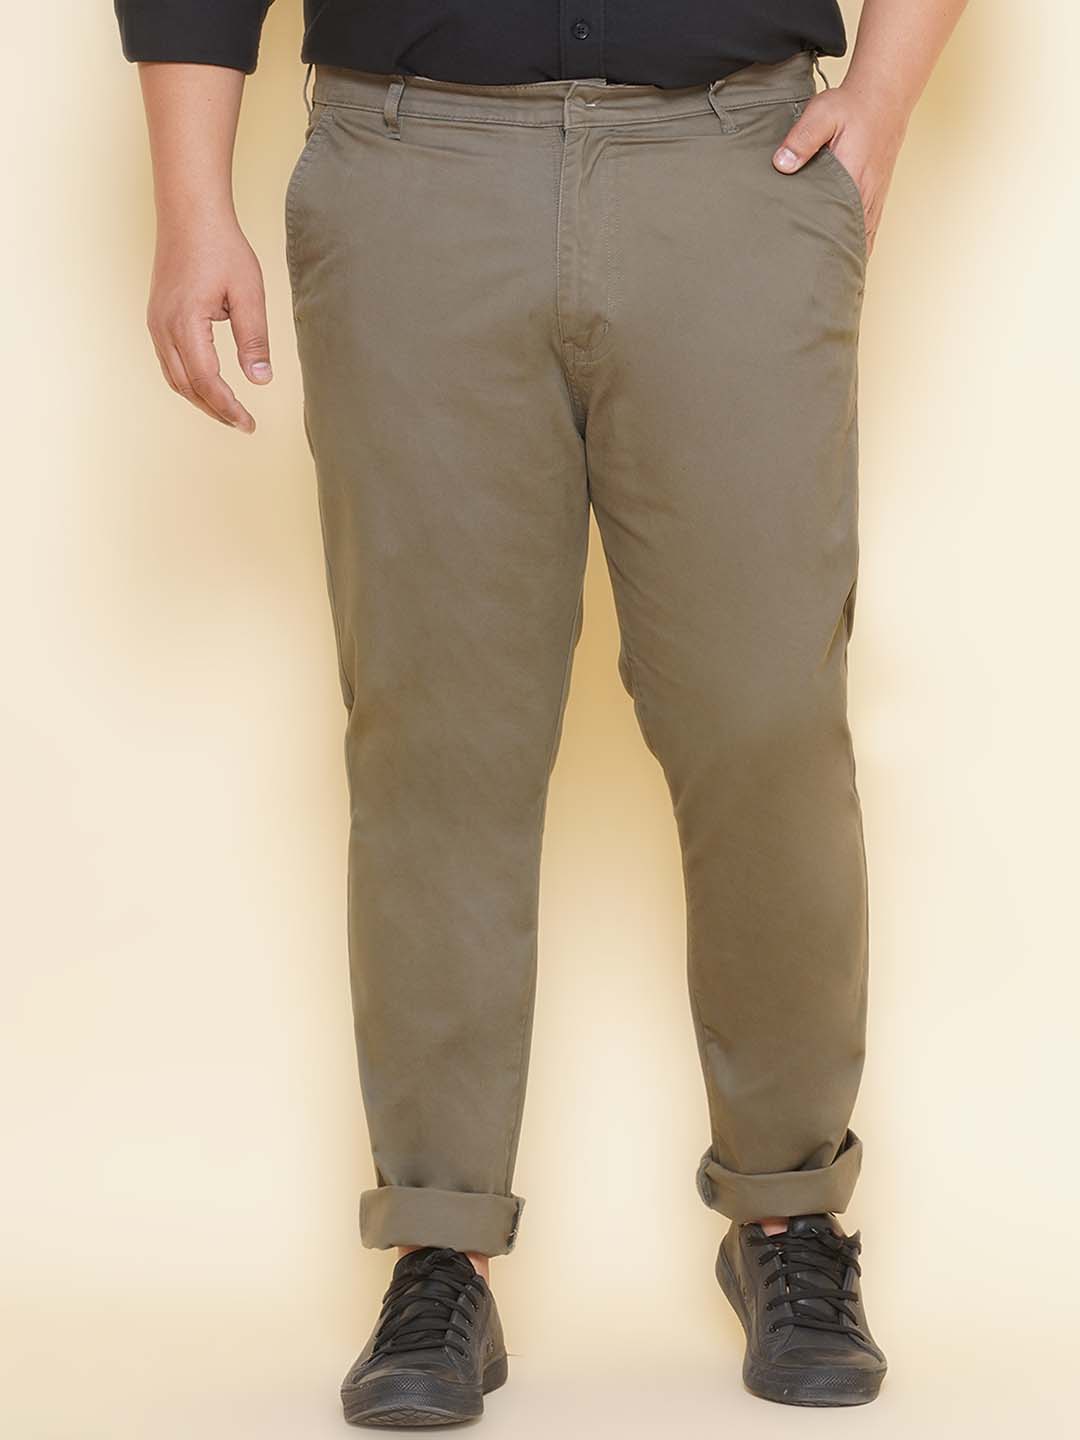 bottomwear/trousers/JPTR21021/jptr21021-1.jpg